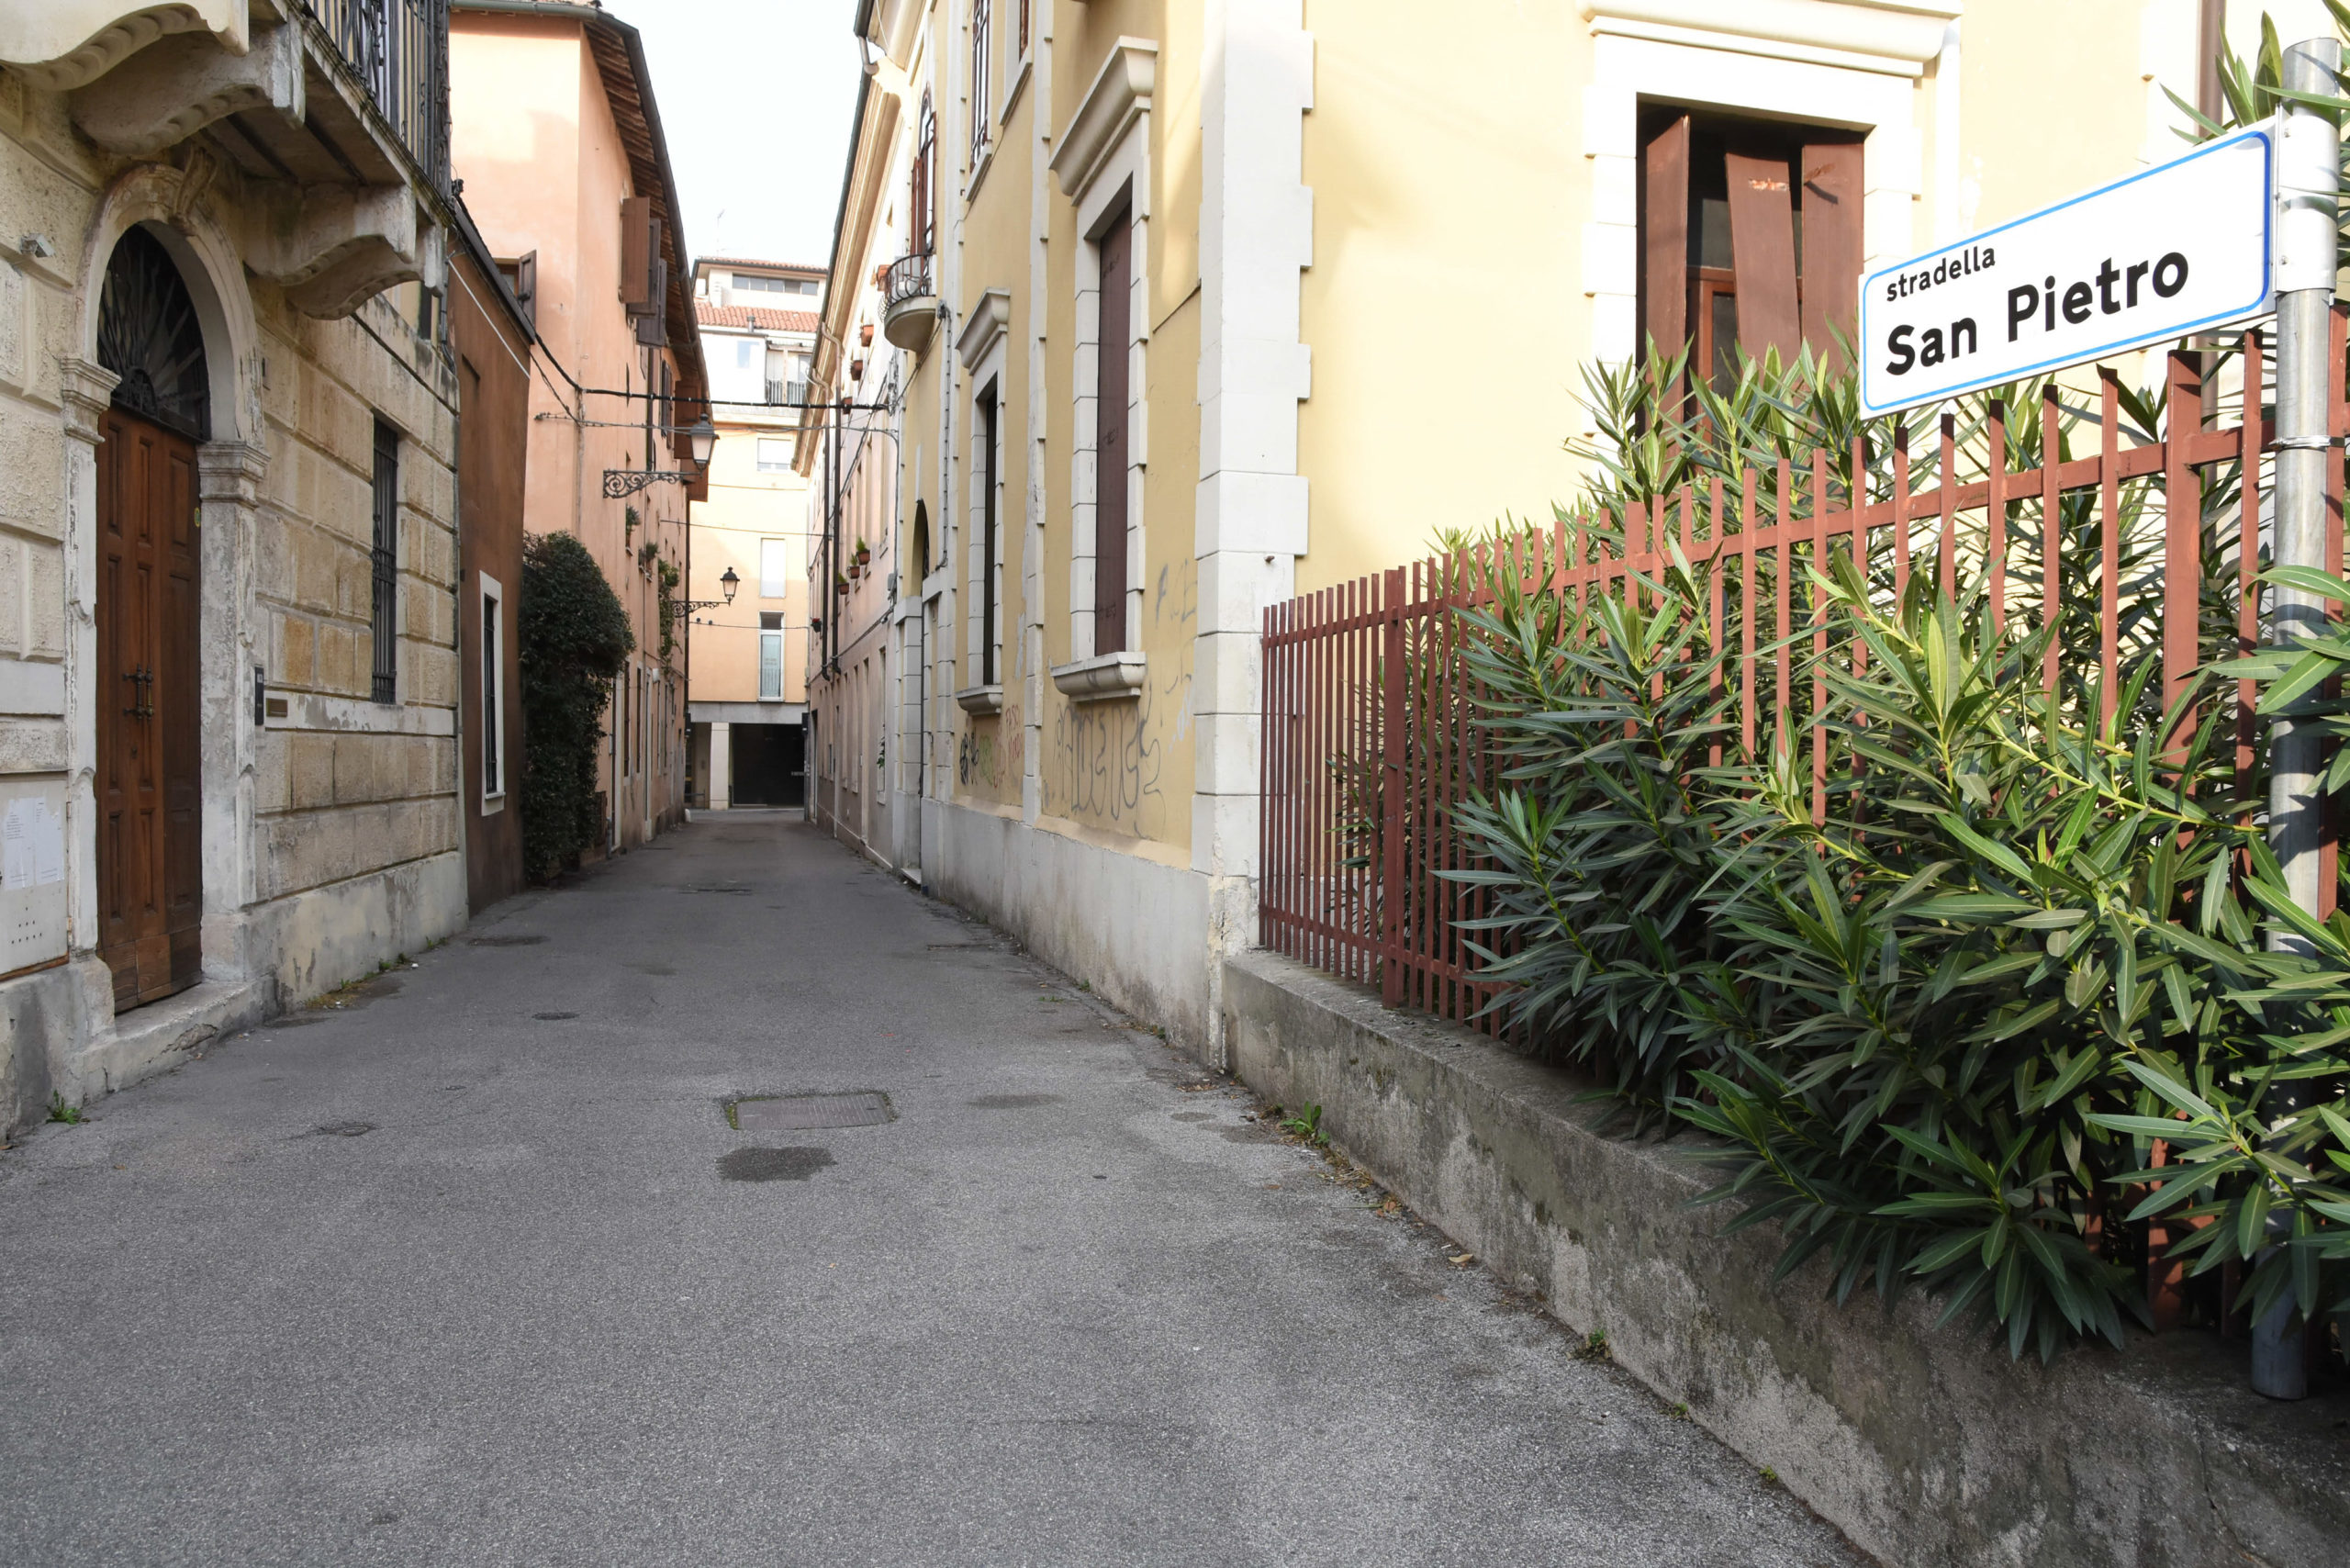 Stradella San Pietro (Vicenza-Toniolo Ilaria-Colorfoto per ViPiù)